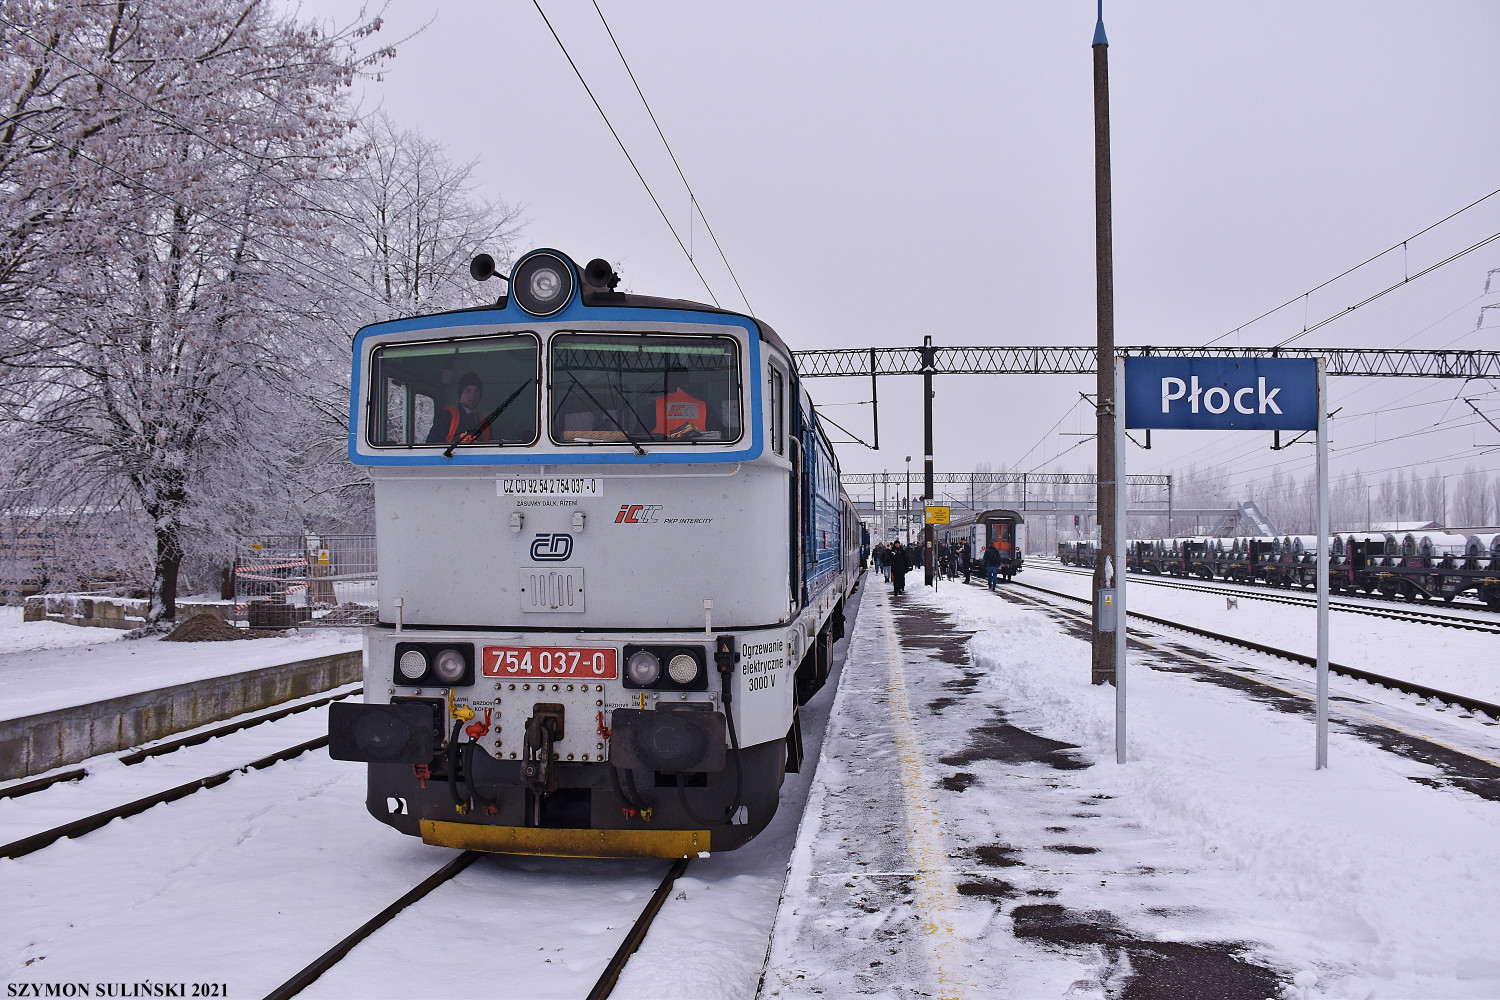 Lokomotywa 754 037-0 dzierżawiona przez spółkę PKP Intercity od Kolei Czeskich po dojeździe do stacji Płock z pociągiem TLK 54102 Flisak relacji Gdynia Główna – Katowice, obok skład pociągu relacji przeciwnej